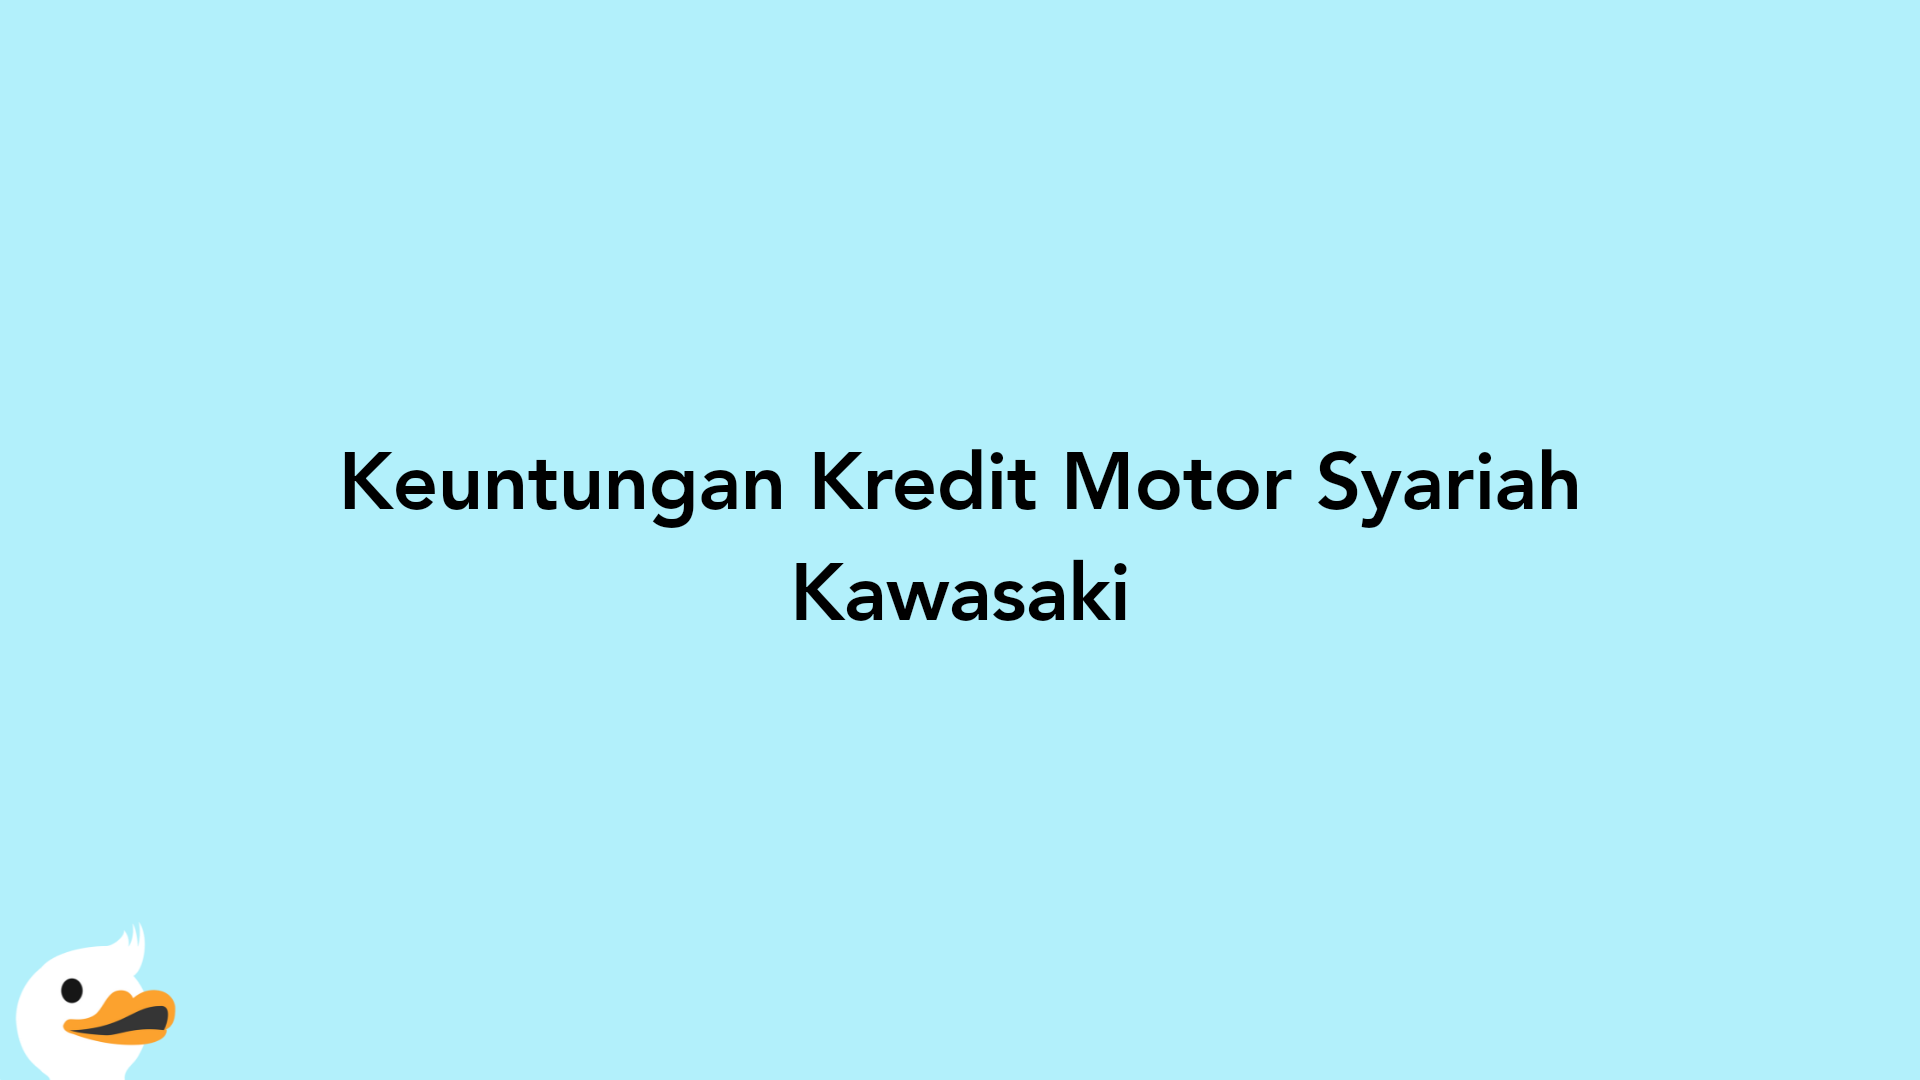 Keuntungan Kredit Motor Syariah Kawasaki